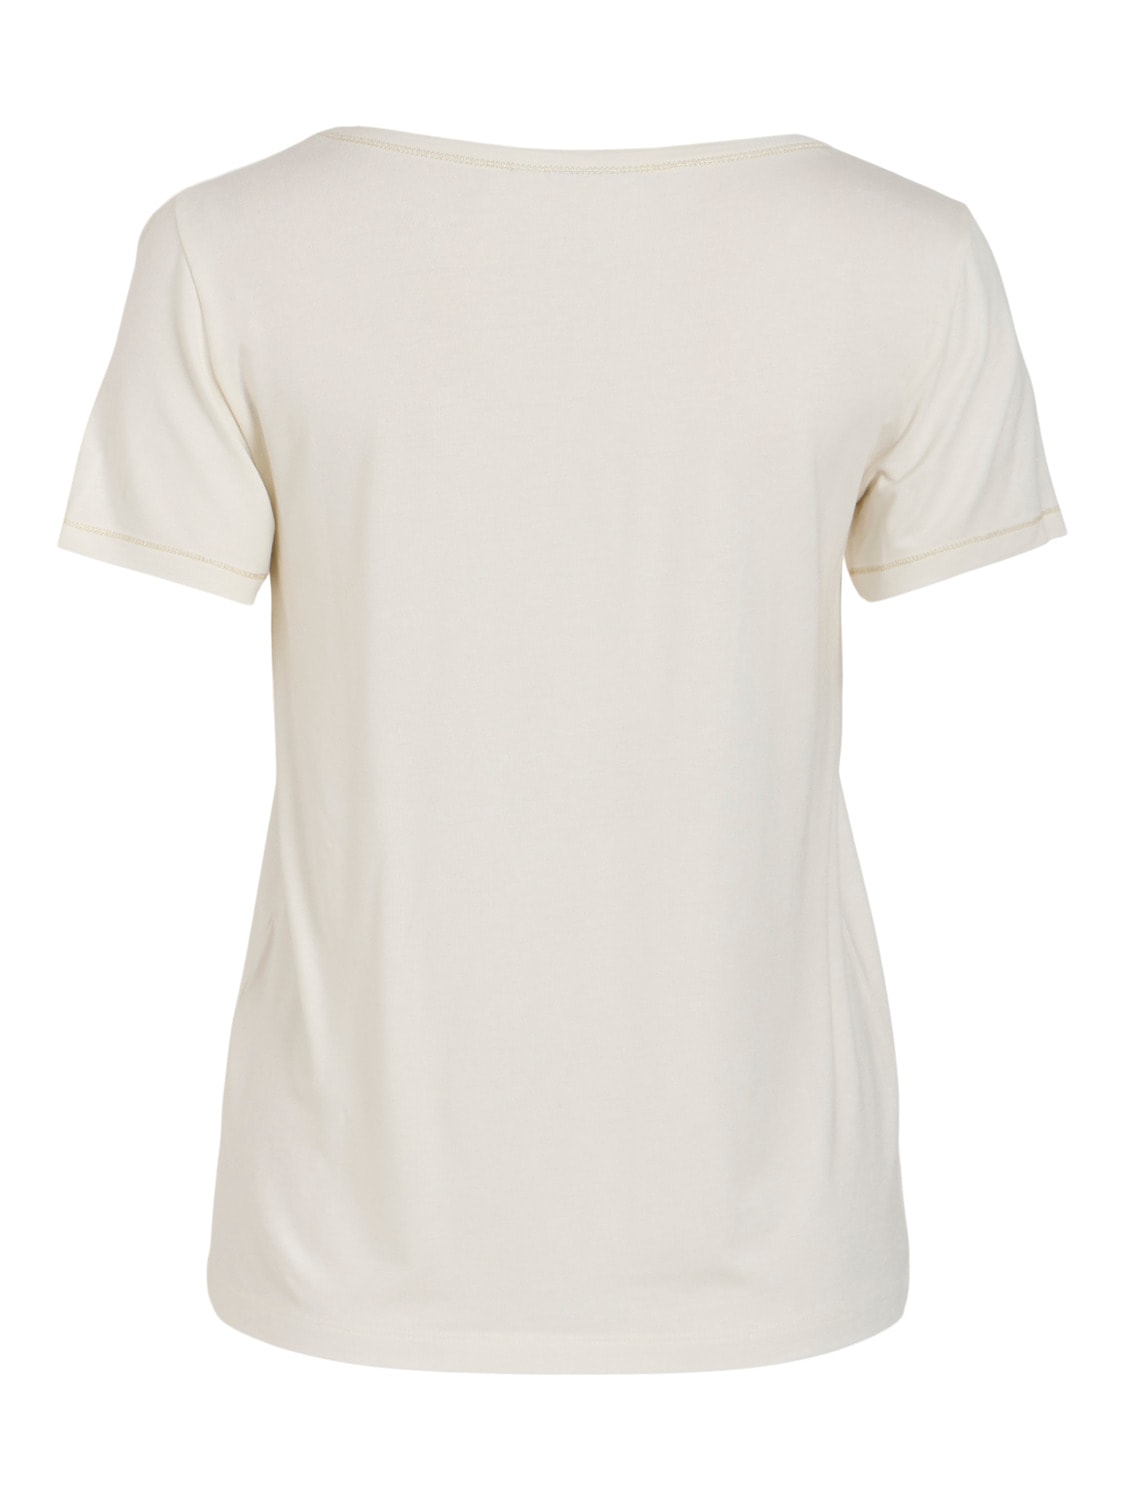 Camiseta Básica Beige Glitter Vila Mase 14090873